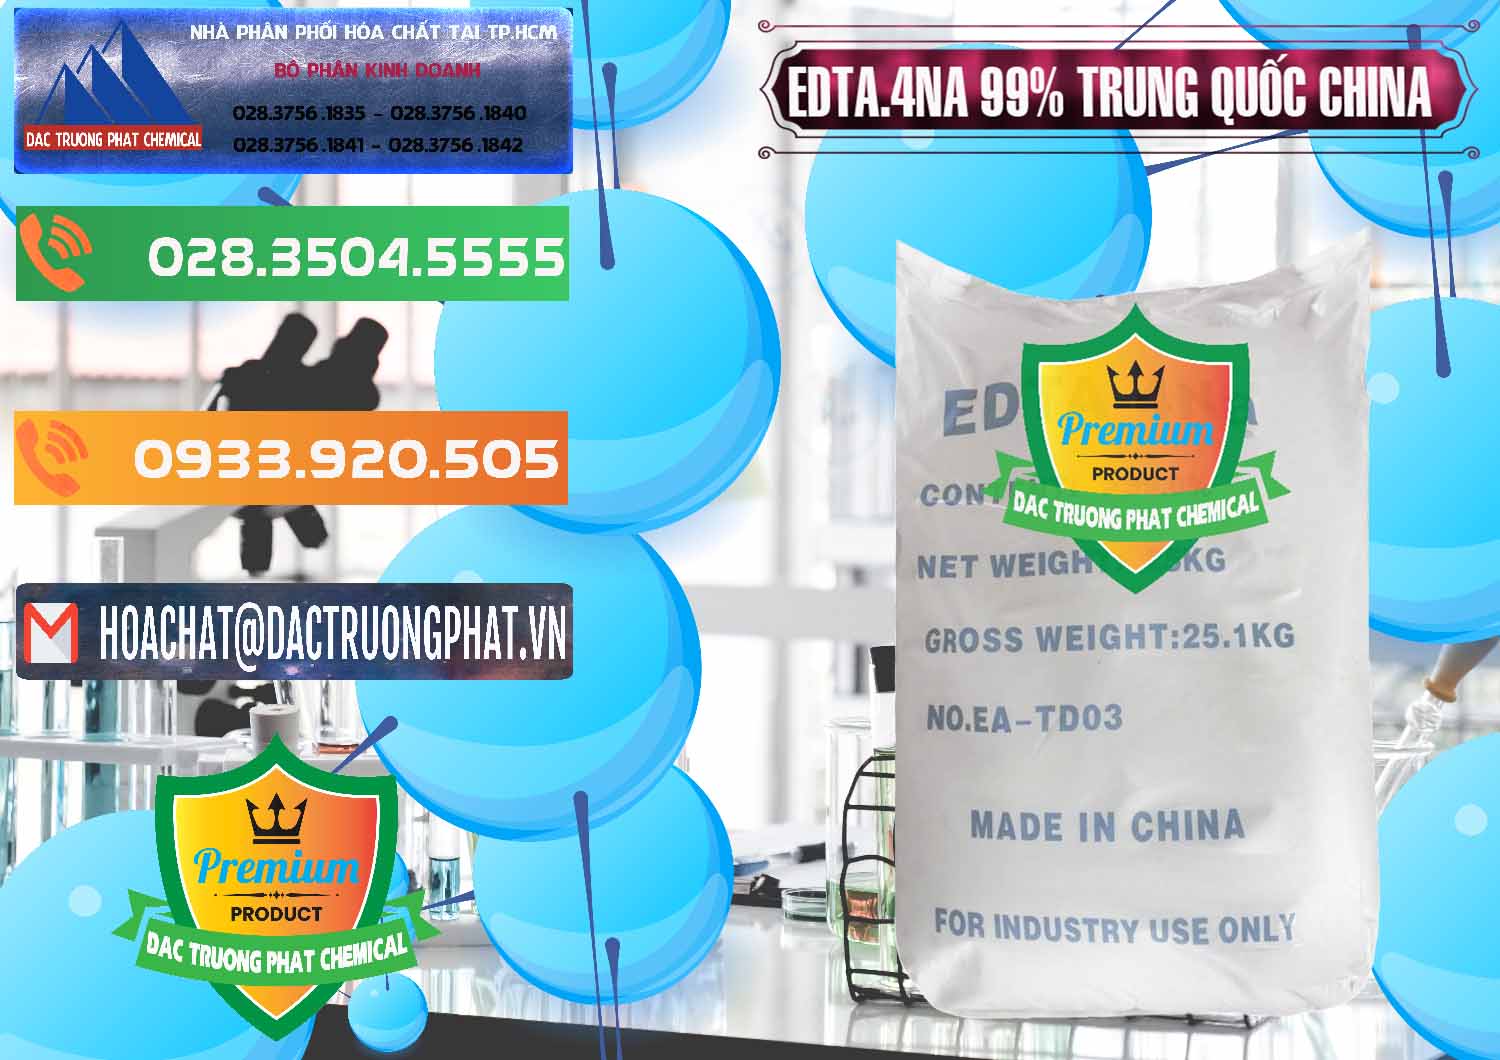 Chuyên nhập khẩu & bán EDTA.4NA - EDTA Muối 99% Trung Quốc China - 0292 - Nơi nhập khẩu & phân phối hóa chất tại TP.HCM - hoachatxulynuoc.com.vn